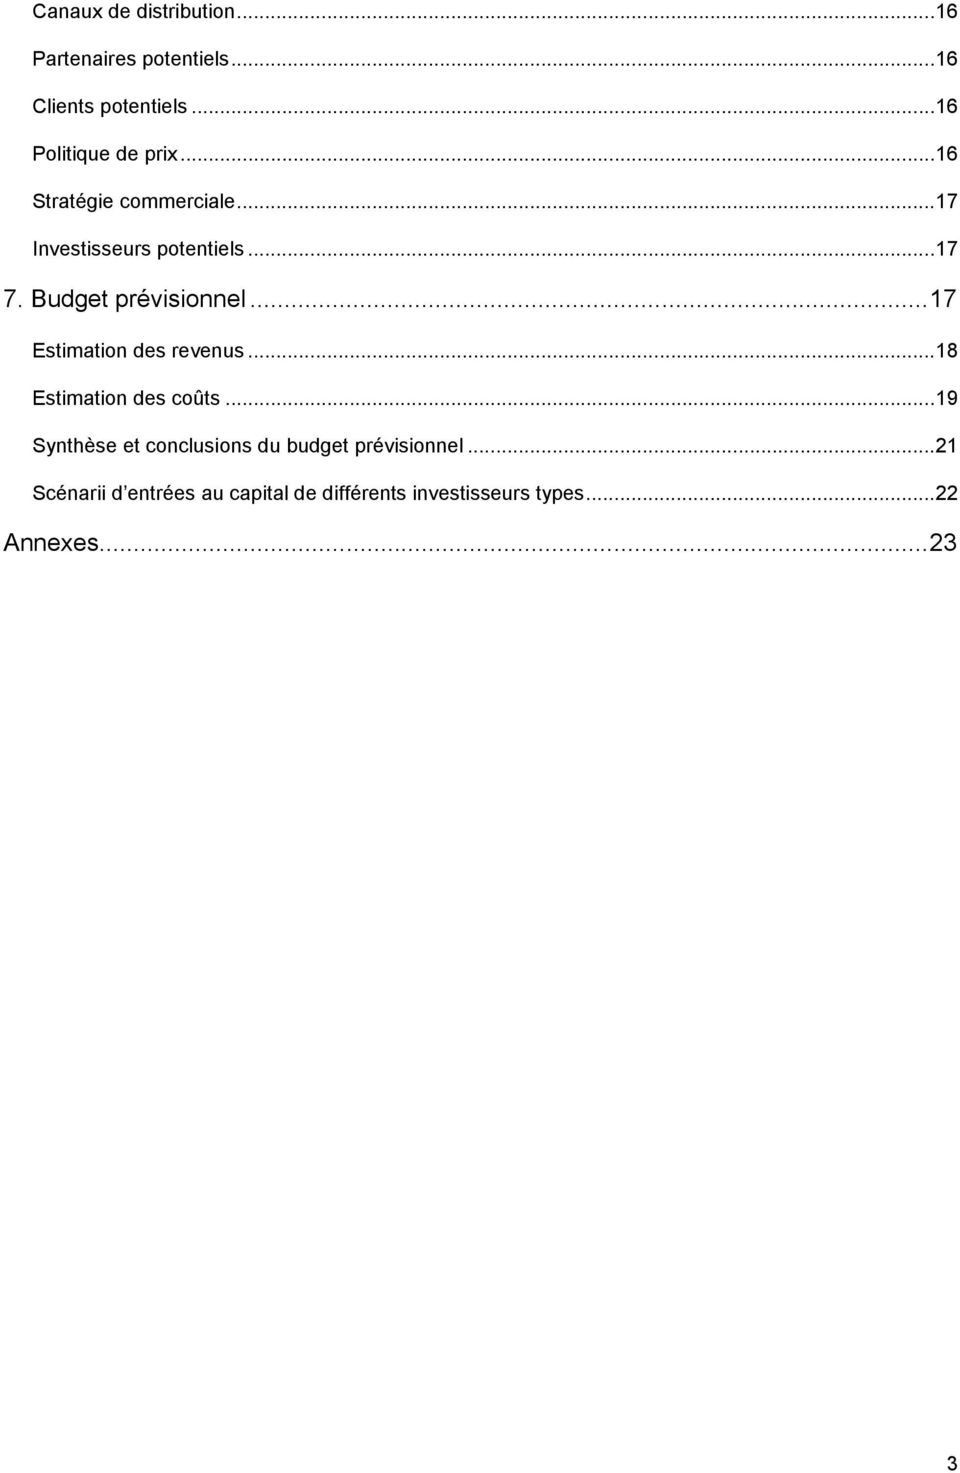 Budget prévisionnel...17 Estimation des revenus...18 Estimation des coûts.